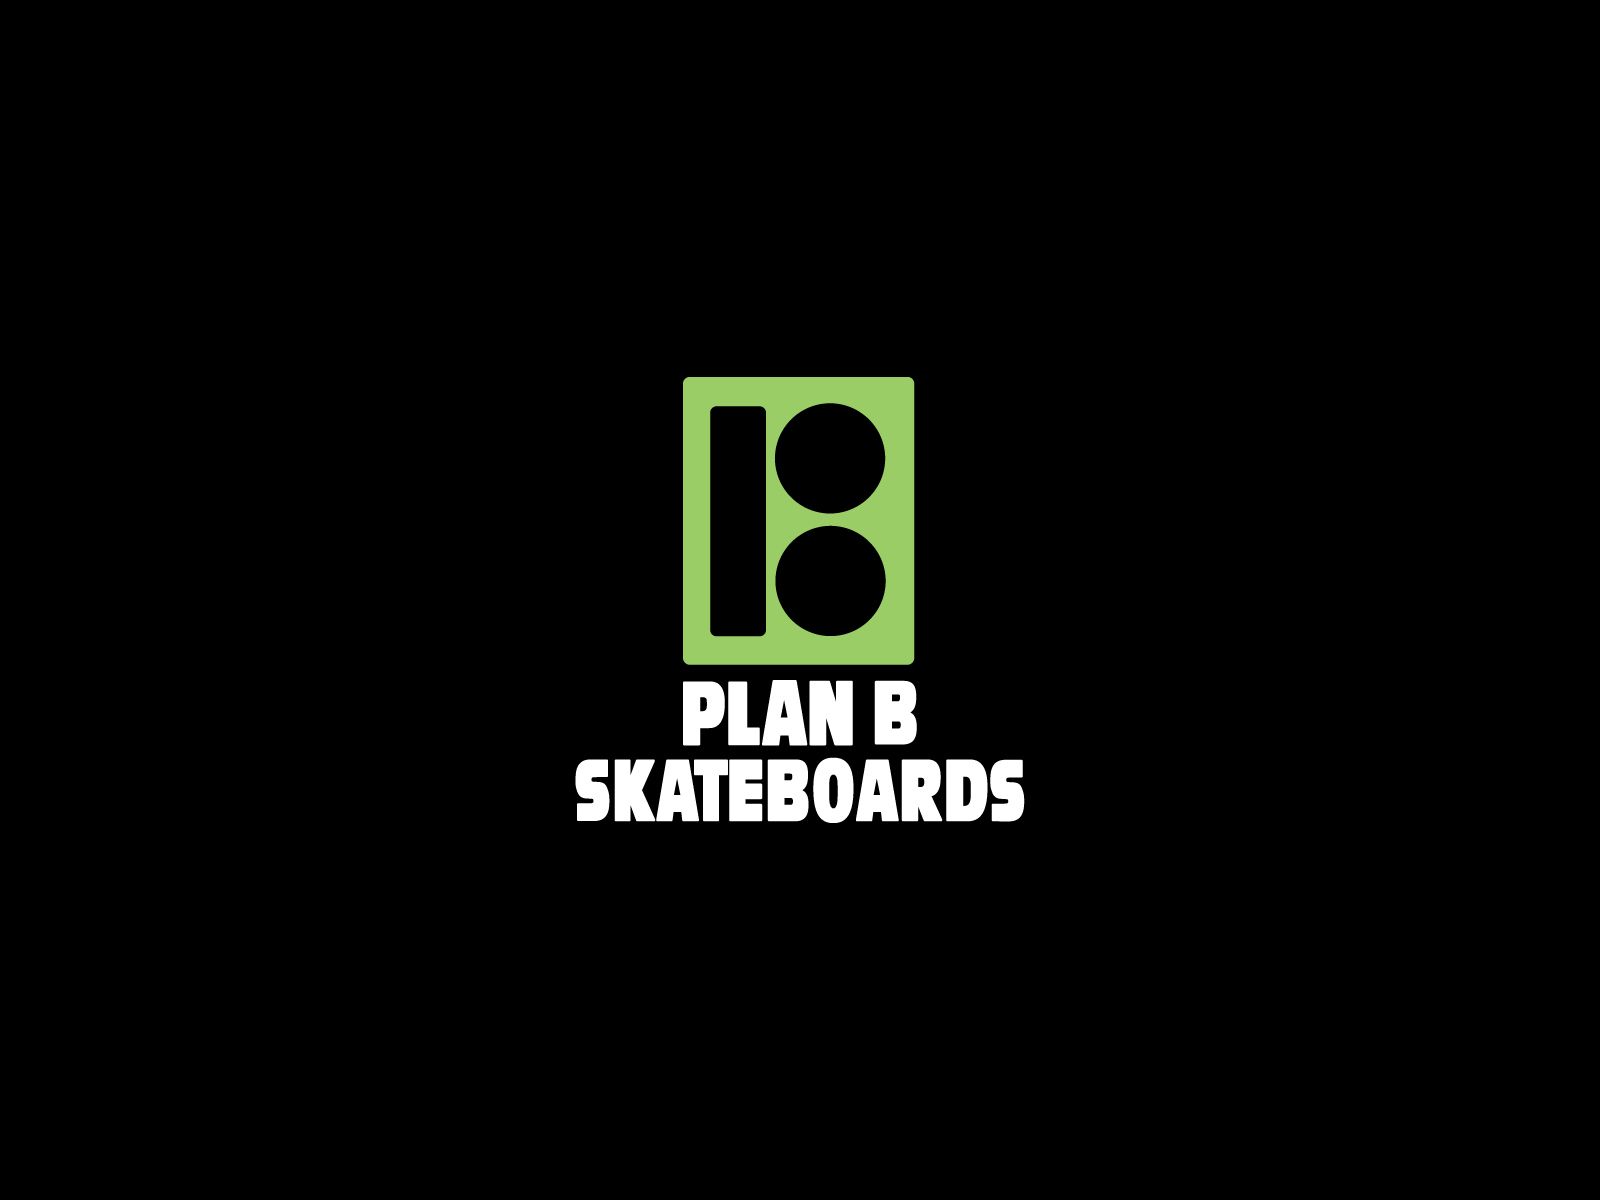 Skateboarding logos | Skateboarding wallpapers, skateboard ...